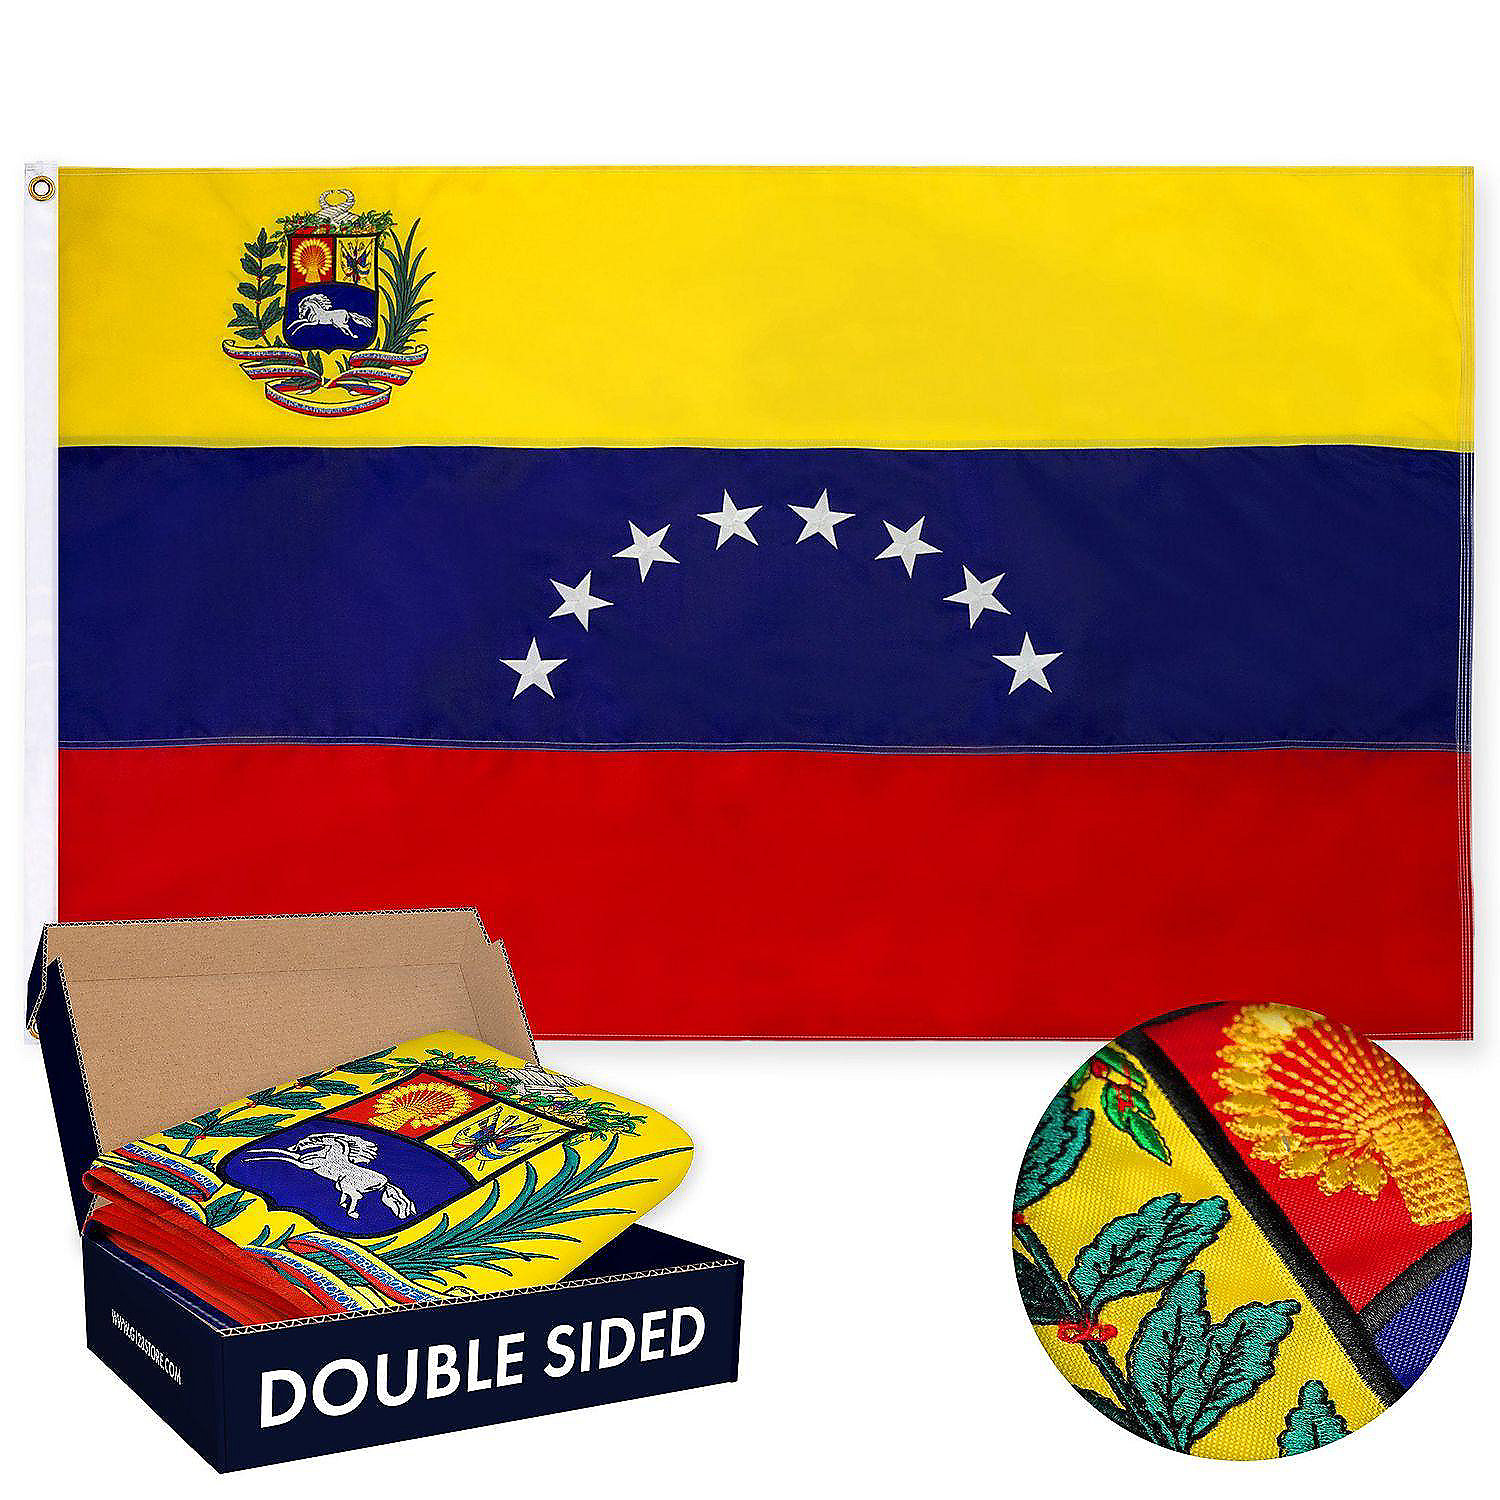 "Venezuela" 3 ft x 5 ft Polyester Flag